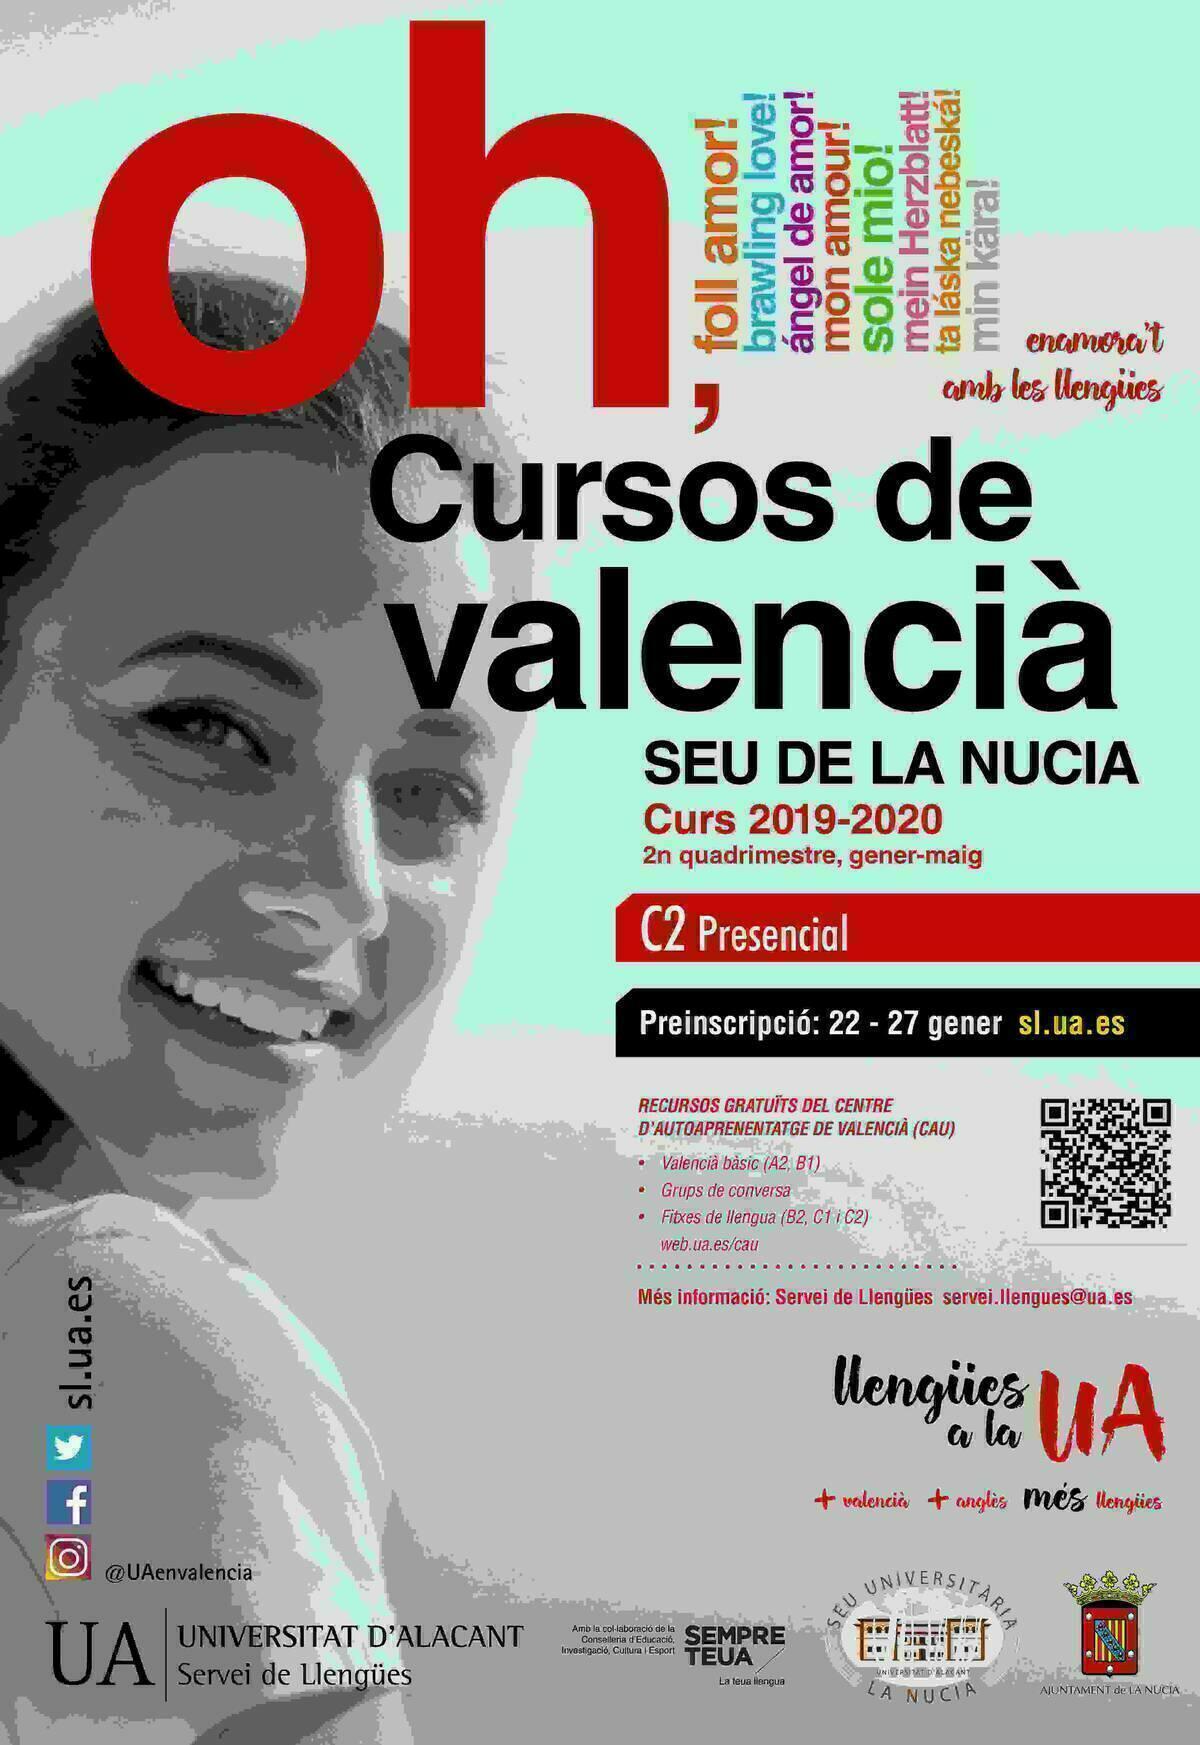 El Curs Superior de Valencià (C2) de la UA abre inscripciones